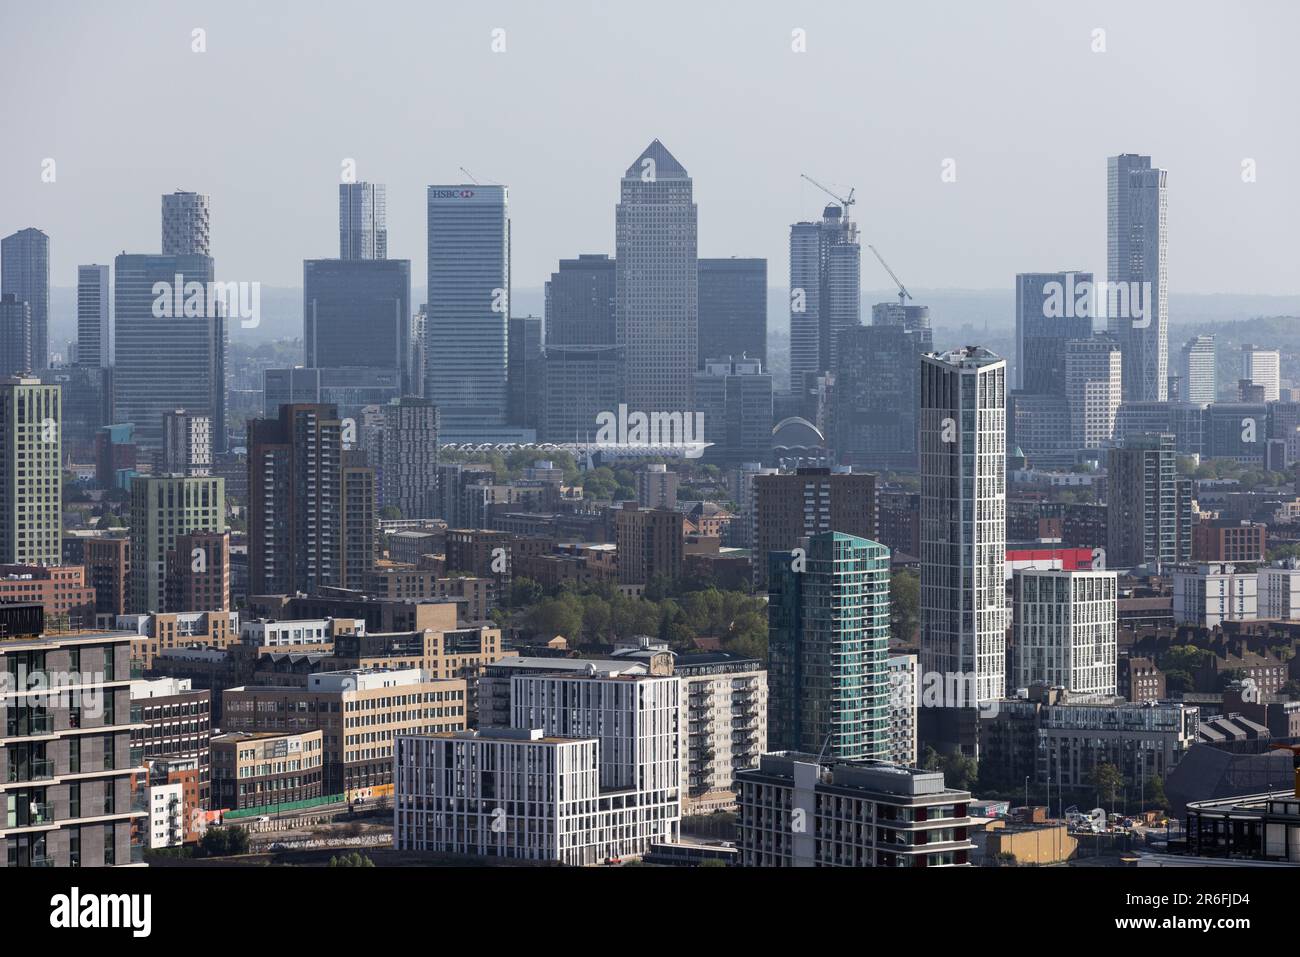 Canary Wharf Skyline, quartier financier de la région des docklands de l'est de Londres sur une chaude journée d'été vue d'un bâtiment de haute élévation à Stratford, Londres. Banque D'Images